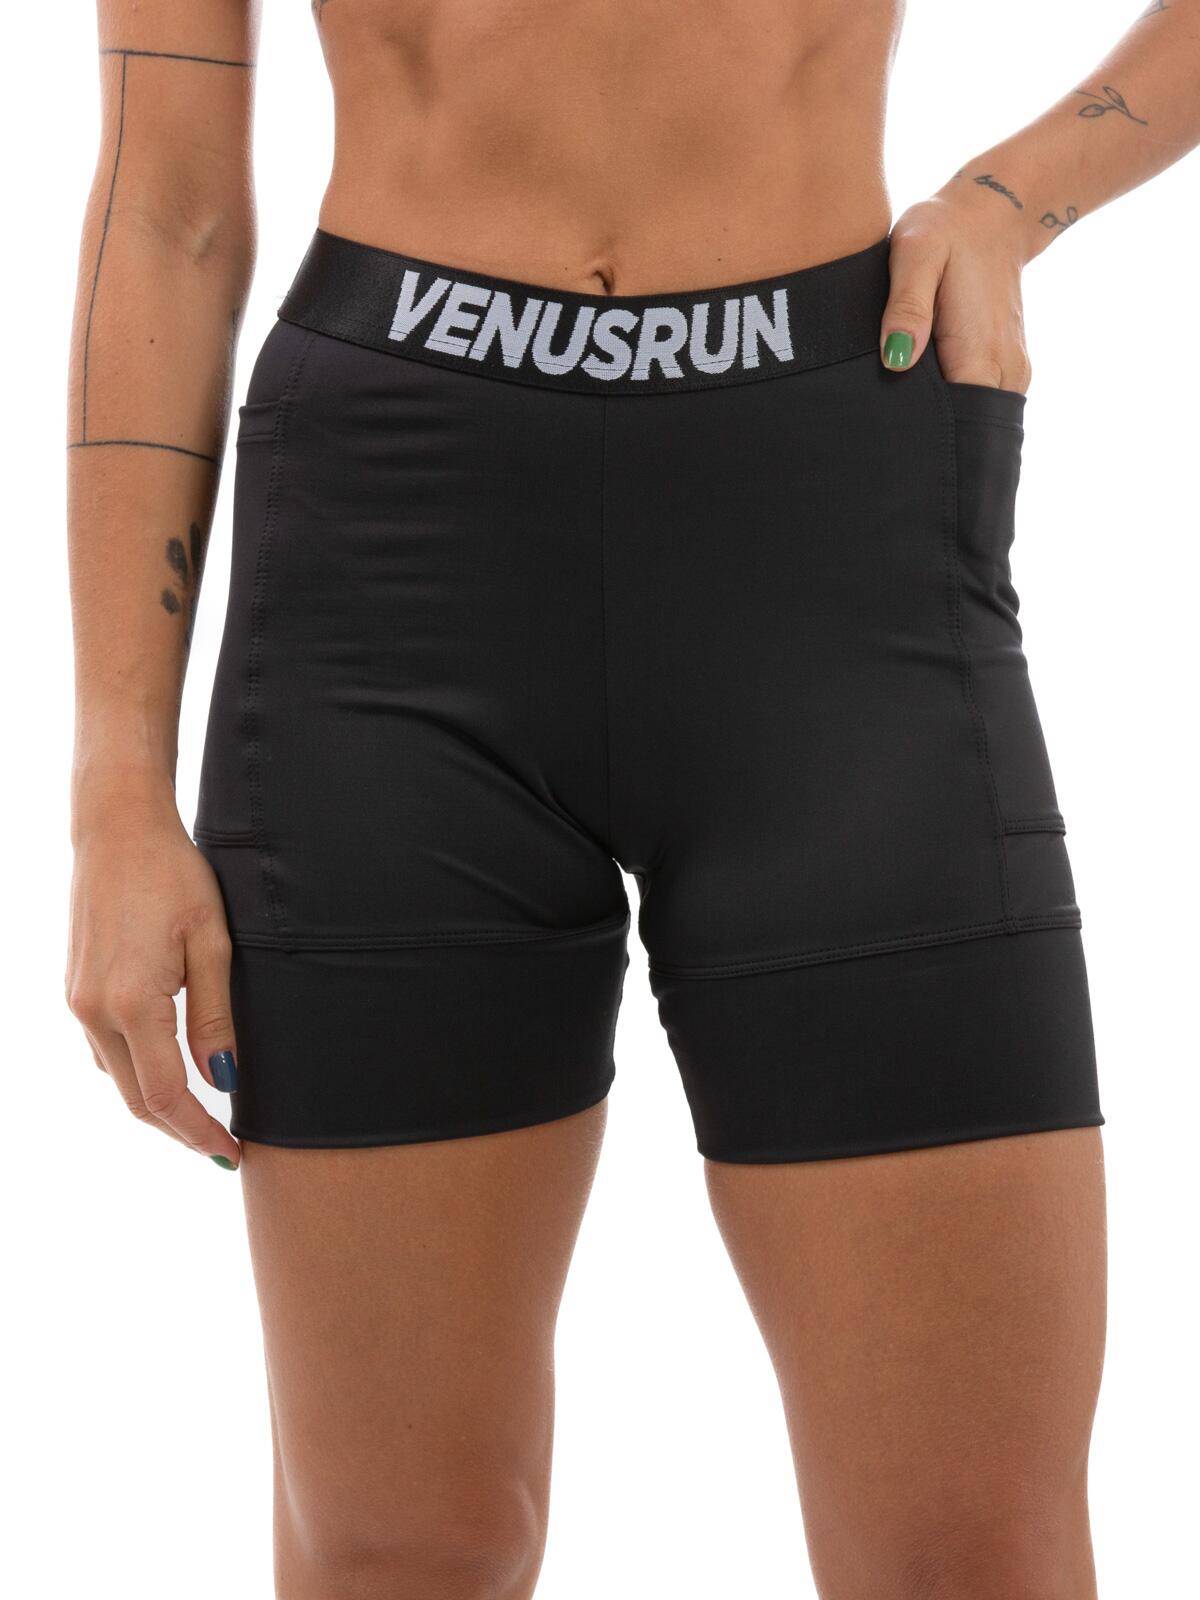 Bermuda Feminina de Compressão Venus Run Aerobic com proteção UV+50